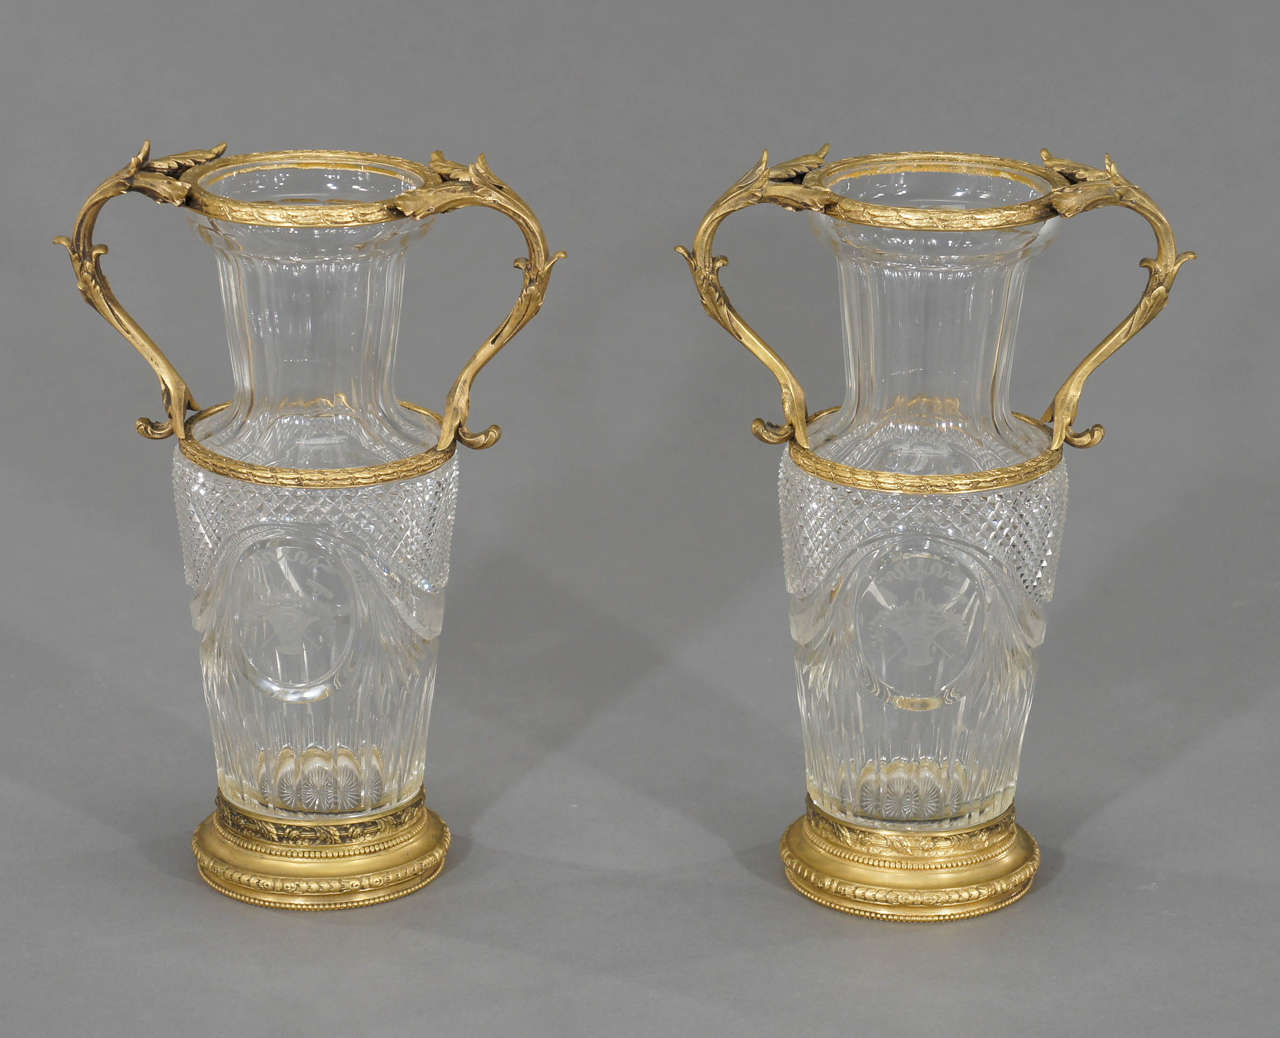 Il s'agit de  une paire plus inhabituelle de vases en cristal de Baccarat dans de superbes montures en bronze vermeil. Il ne s'agit pas de cristal moulé typique, mais de cristal soufflé à la main et finement taillé avec des pointes de diamant et une